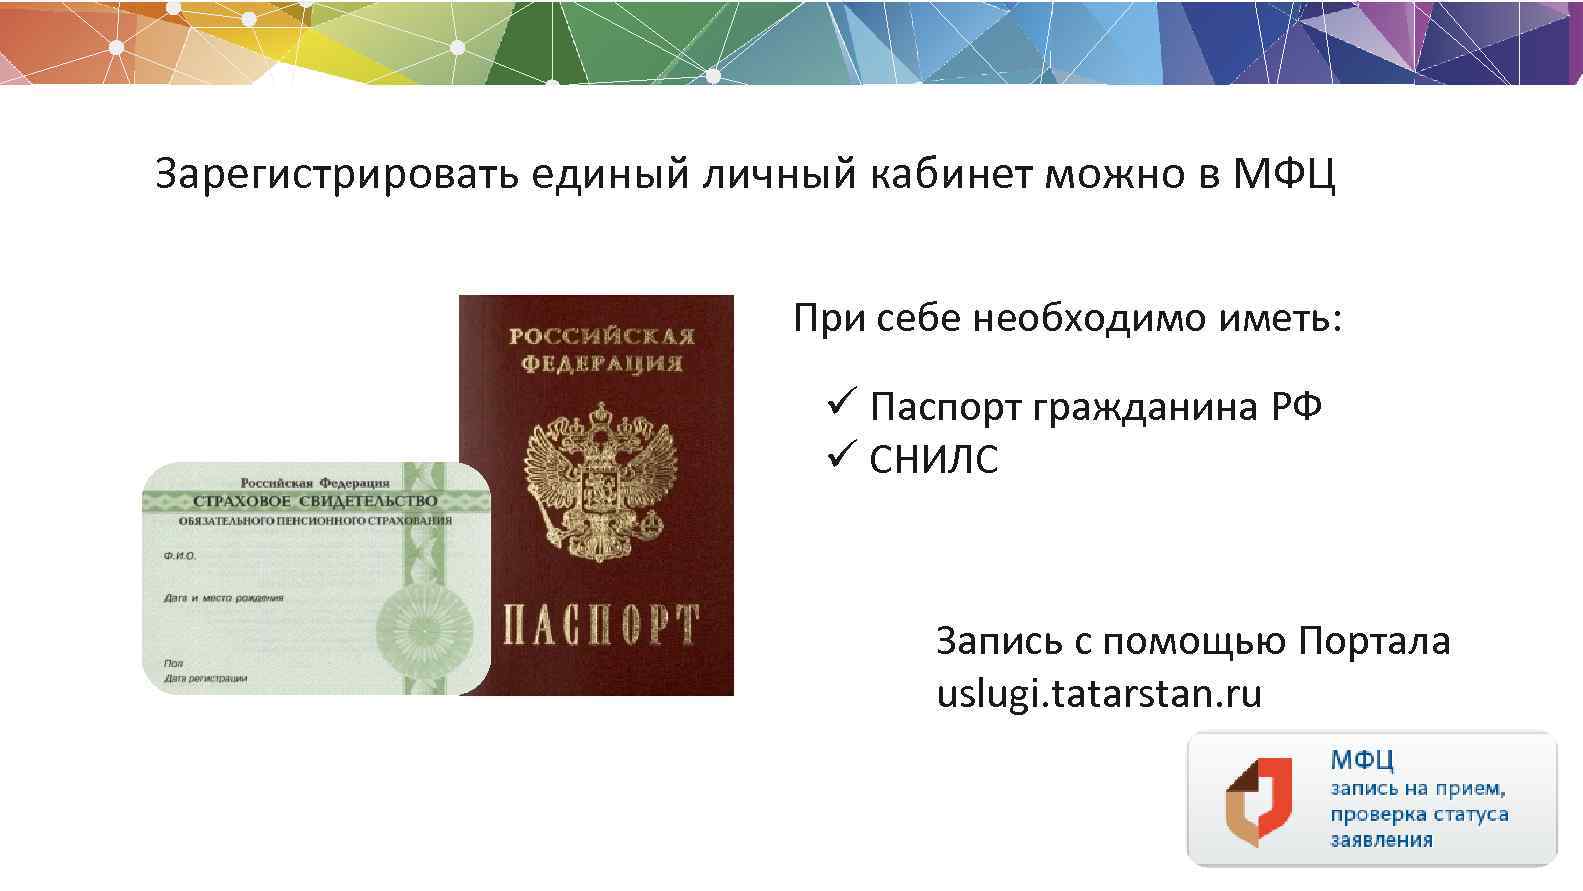 Как сделать фото на паспорт в мфц